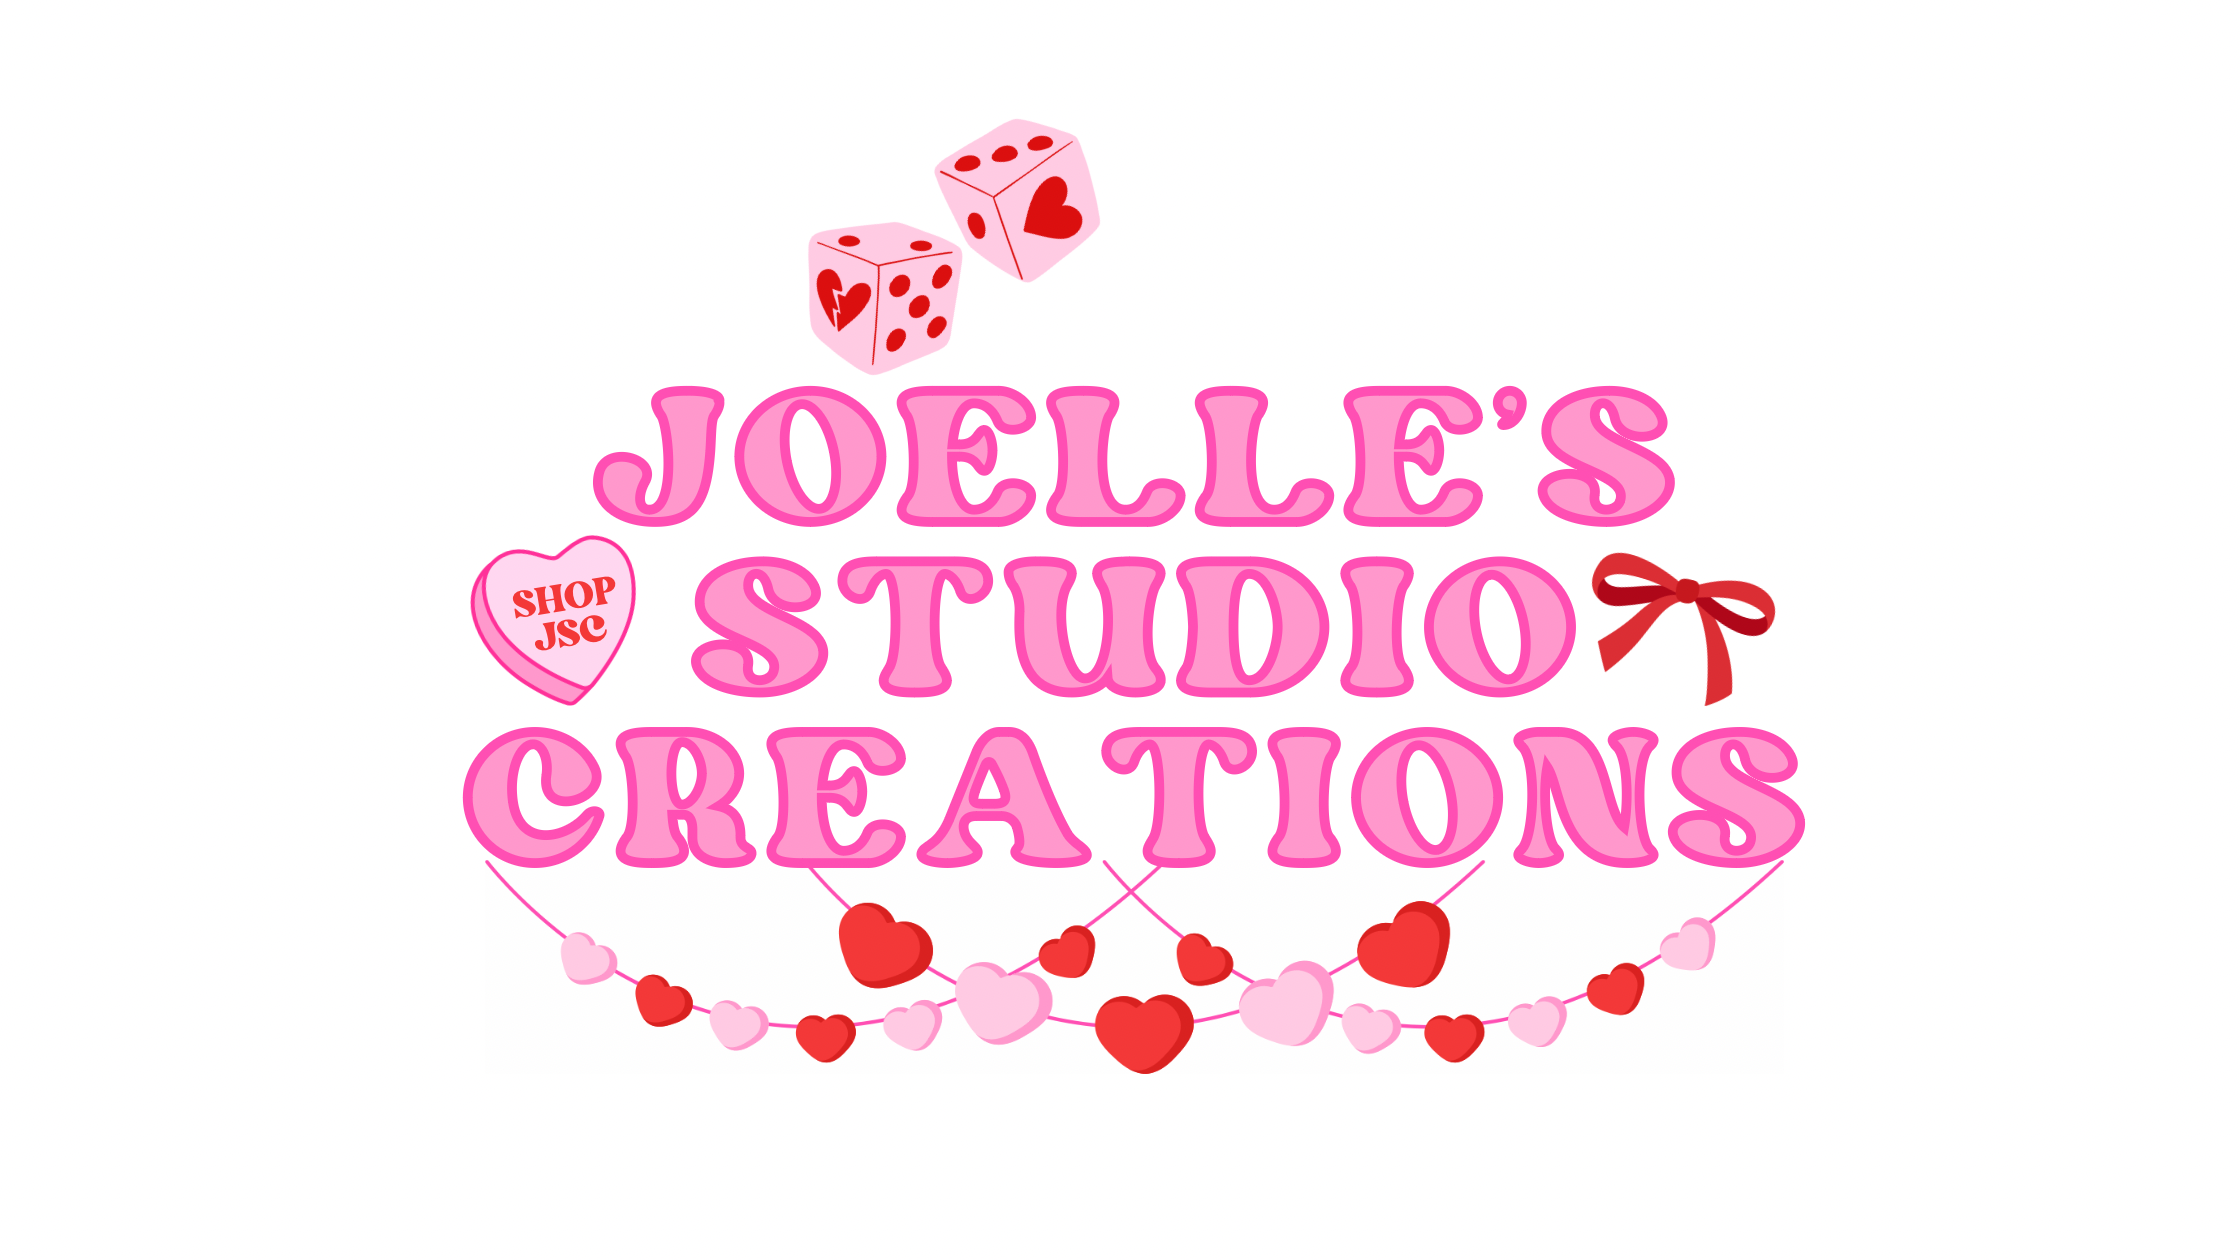 Joelle's Studio Creations